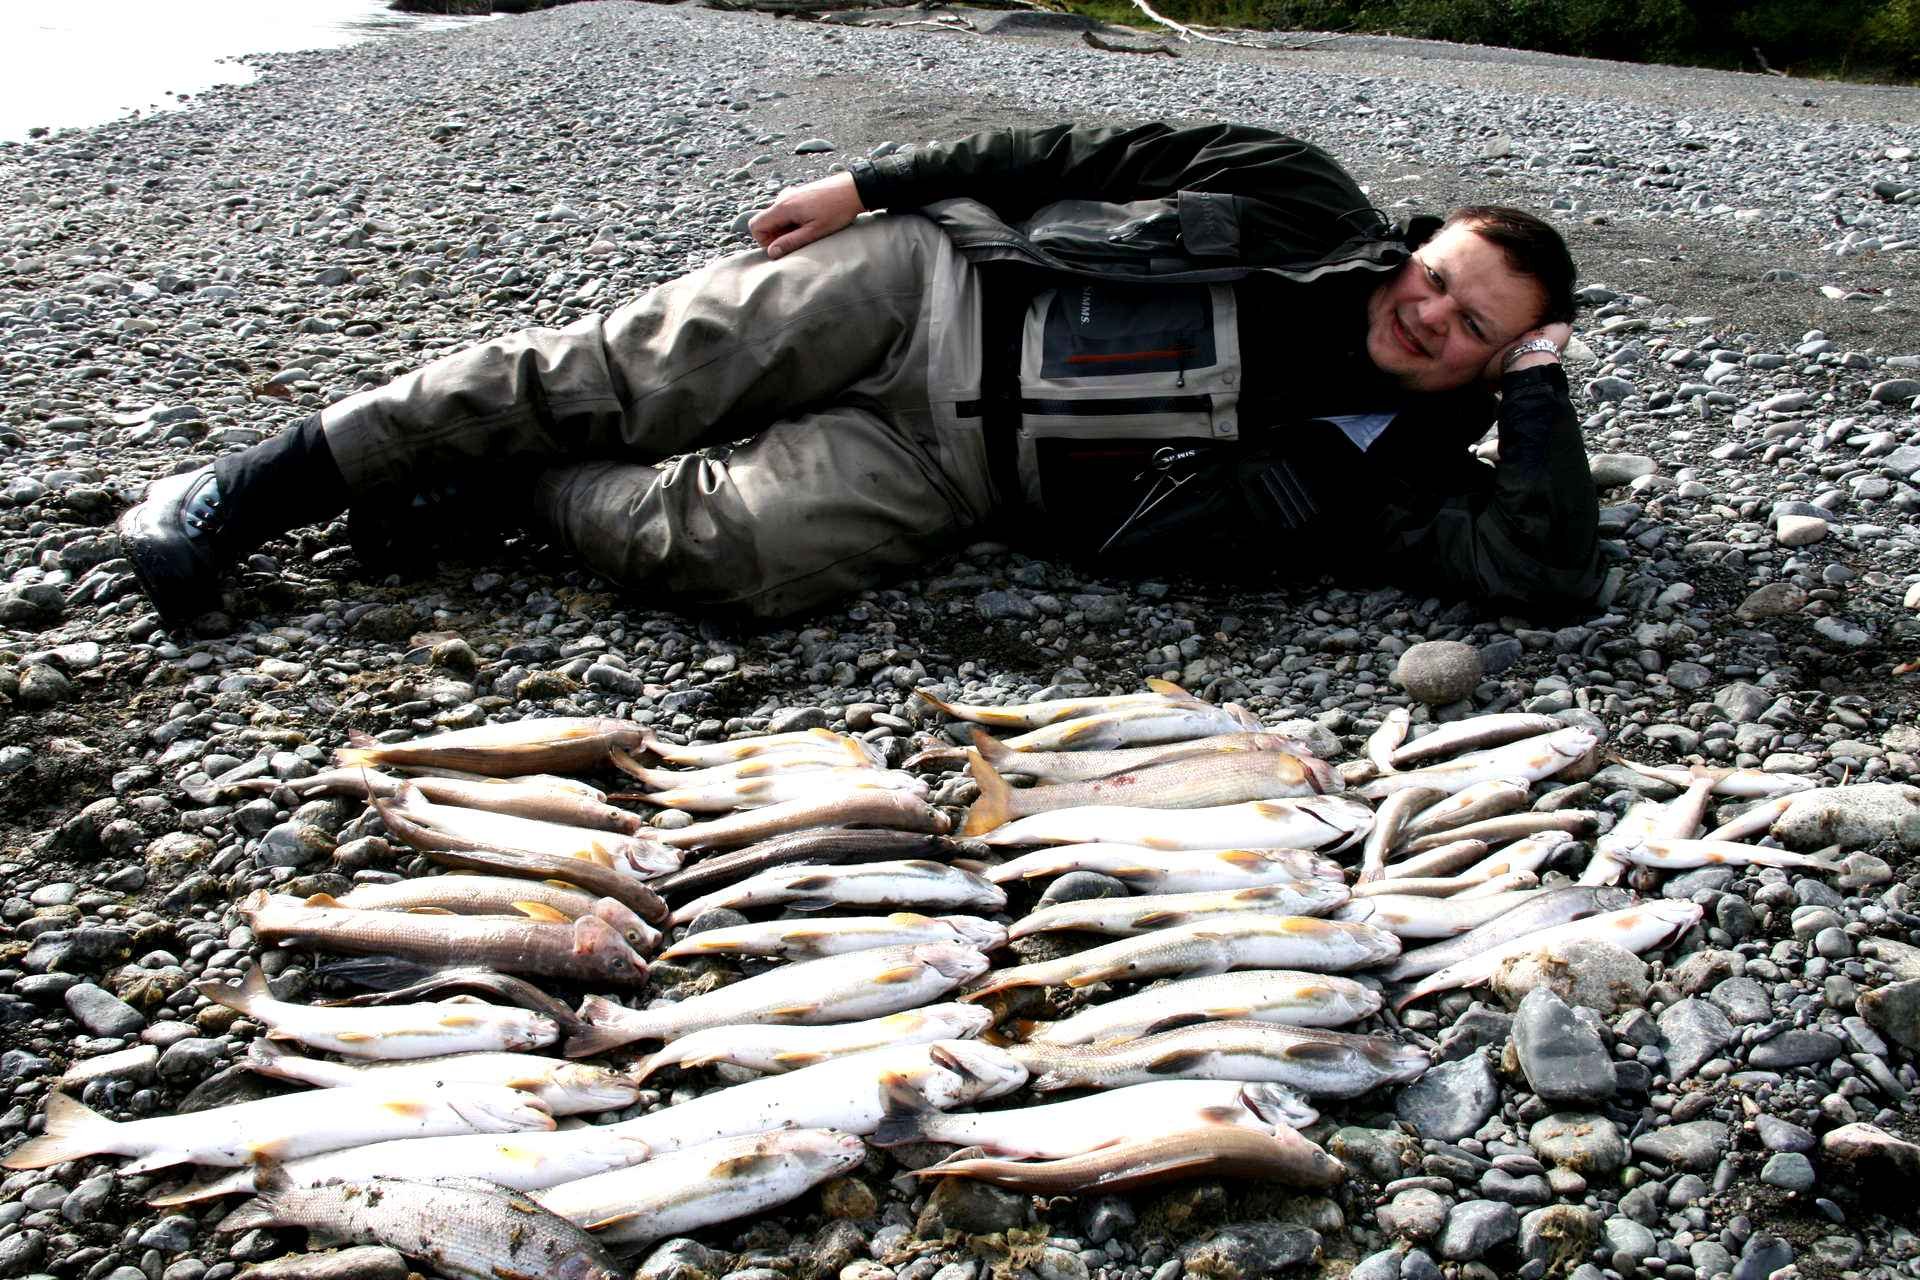 Коротыгина рыбалка. Петропавловск-Камчатский рыбалка. Рыбалка на Камчатке. Охота и рыболовство. Рыба Камчатки.